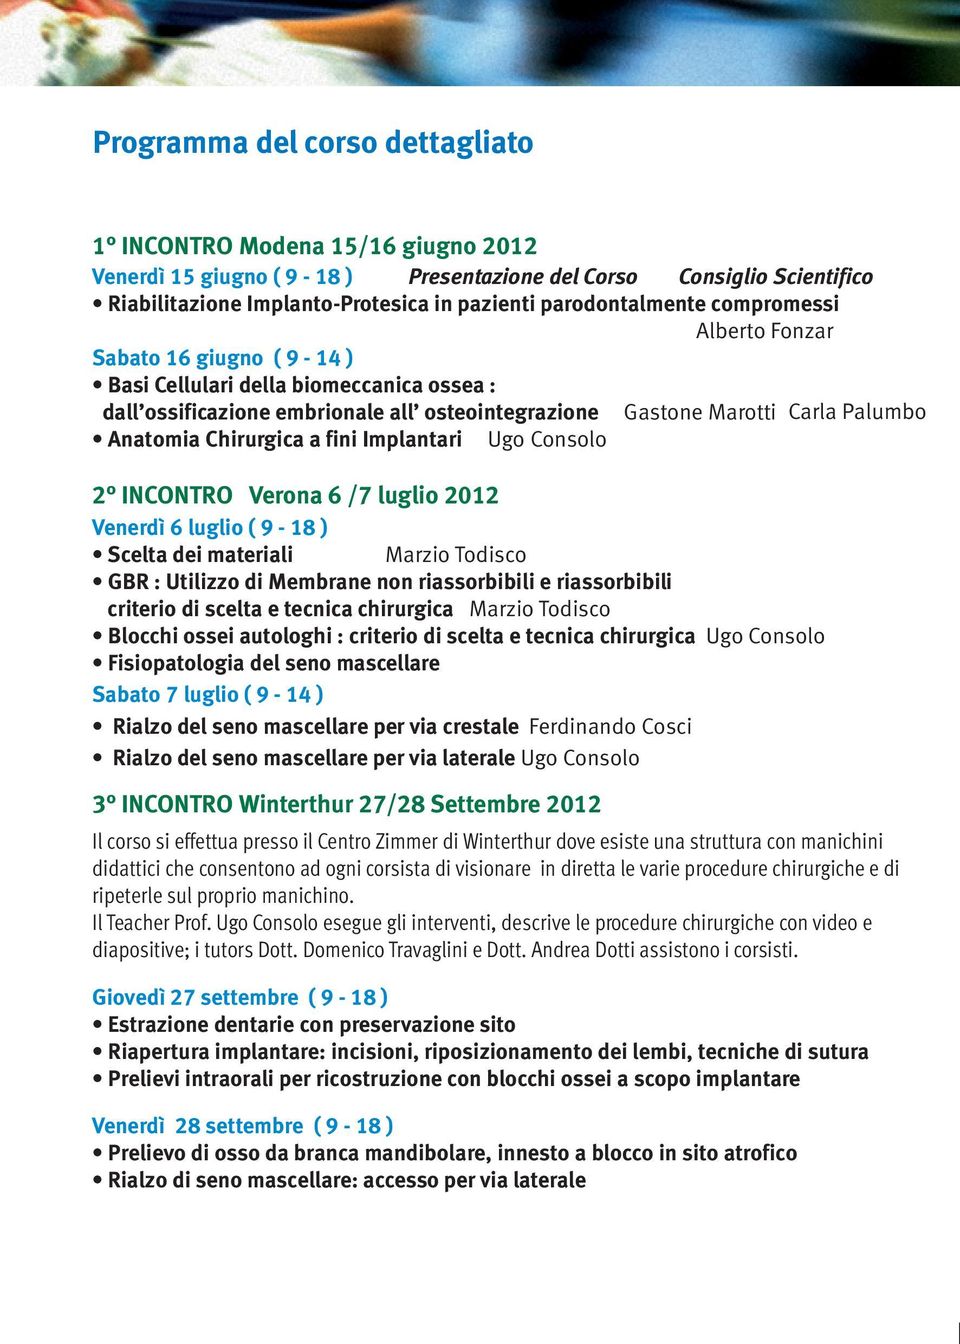 Gastone Marotti 2 INCONTRO Verona 6 /7 luglio 2012 Venerdì 6 luglio ( 9-18 ) Scelta dei materiali Marzio Todisco GBR : Utilizzo di Membrane non riassorbibili e riassorbibili criterio di scelta e